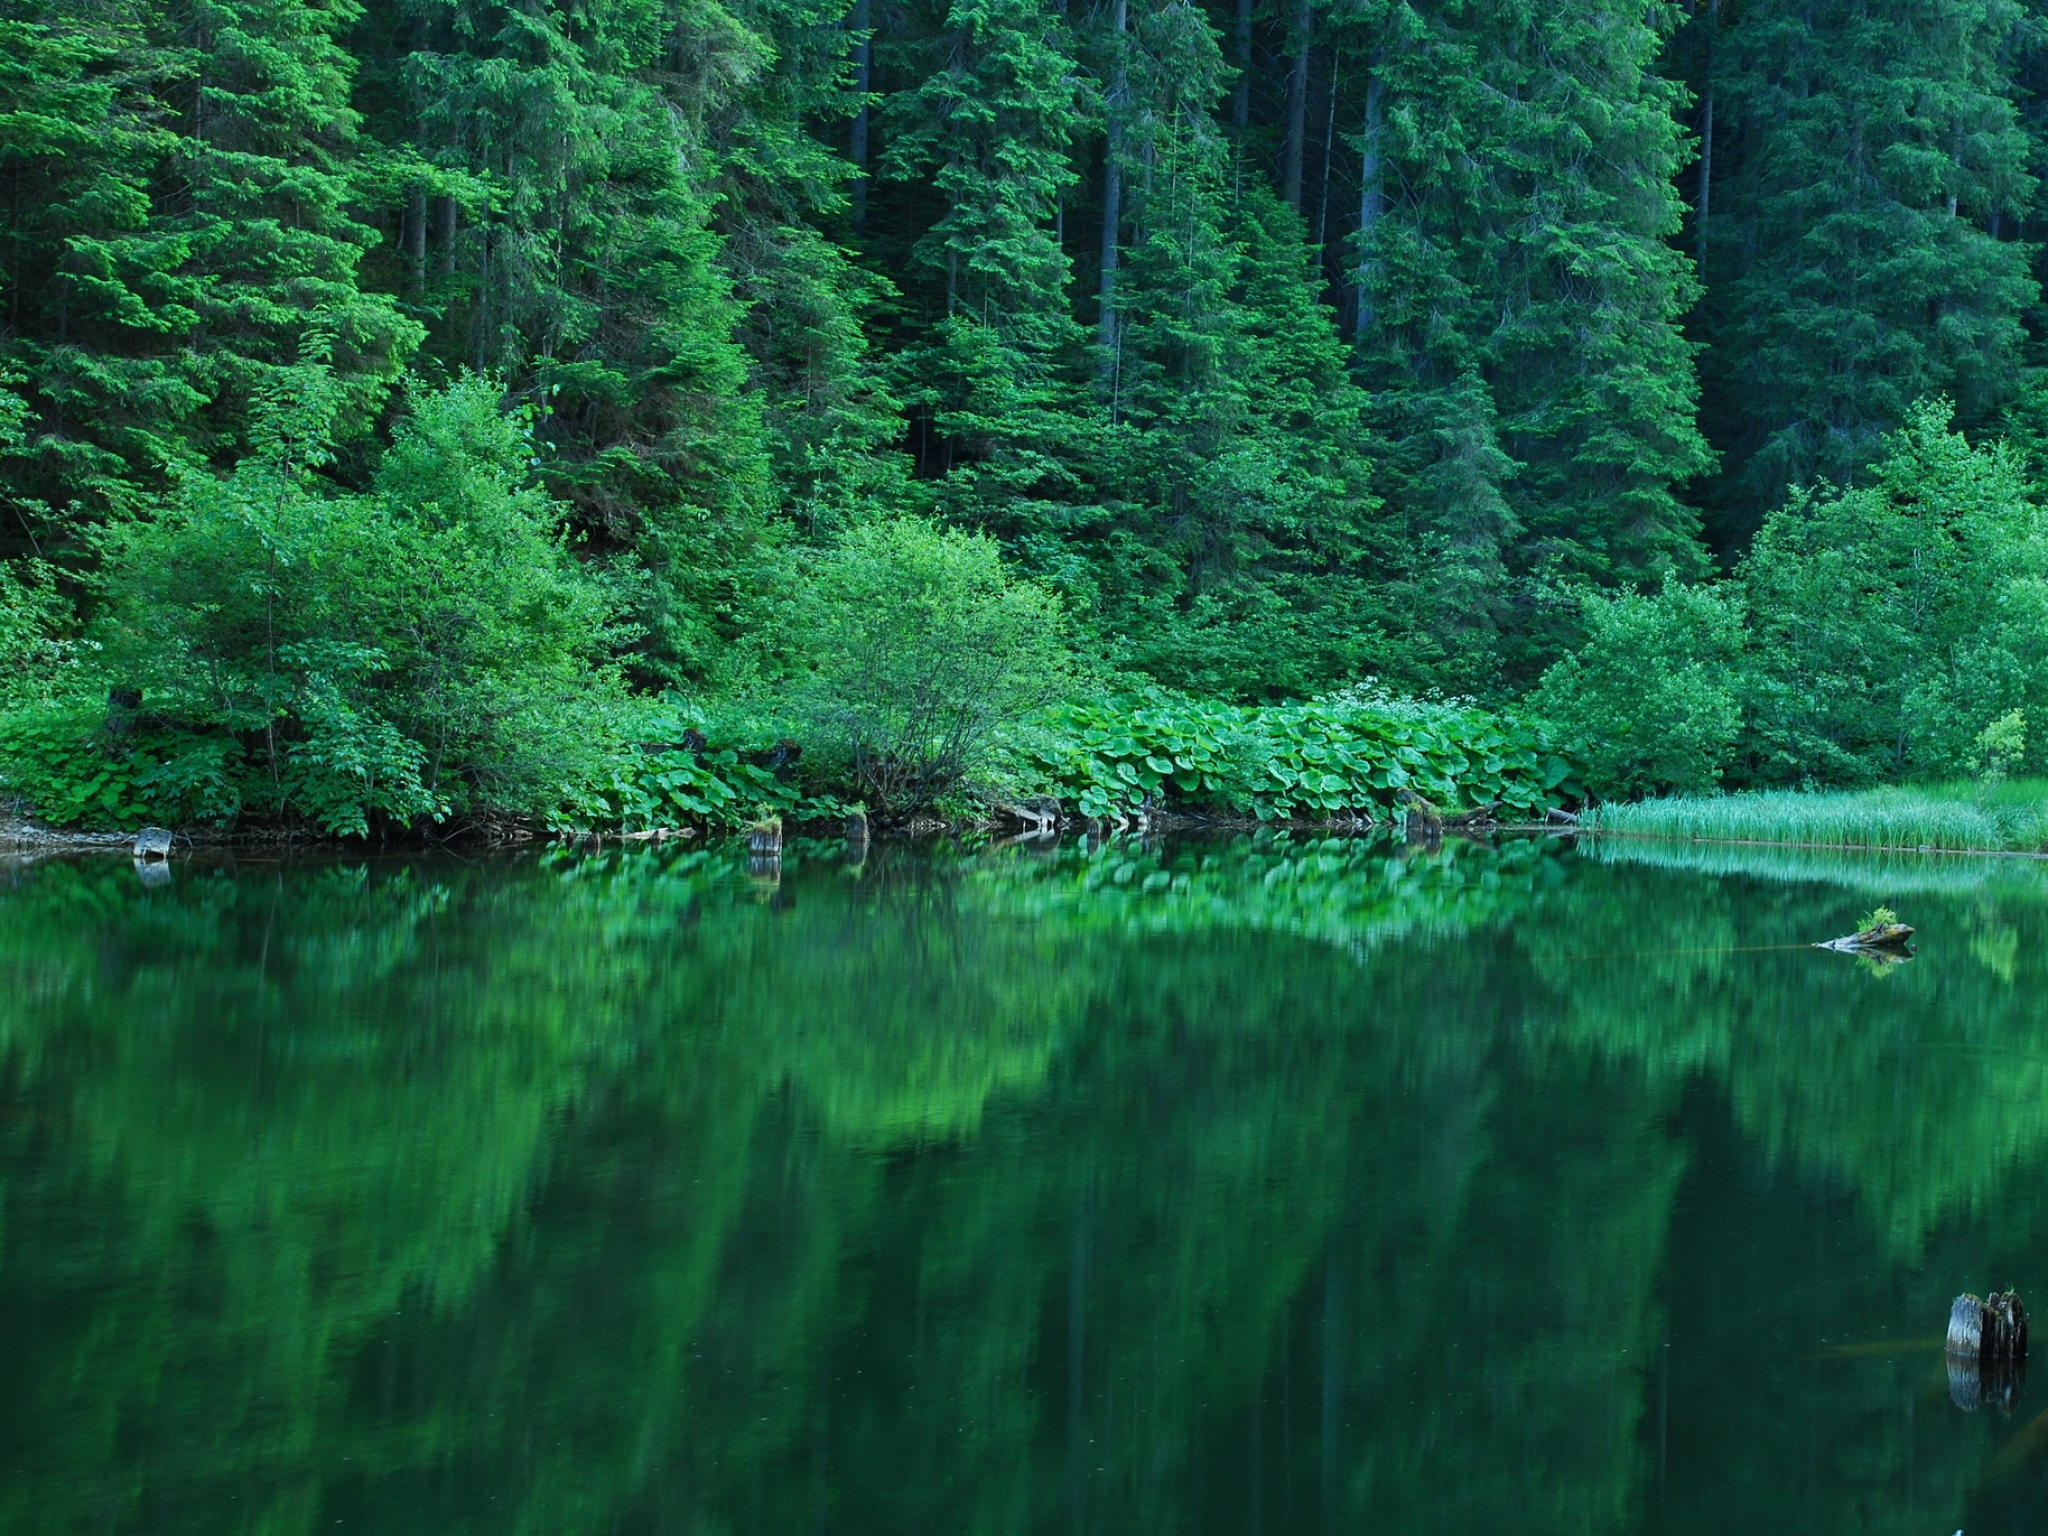 Красивые зеленые места. Изумрудное озеро зеленолес. Озеро Рица. Лесное озеро Залмана Кинга. Изумрудно-зеленые водоемы, Твизель, новая Зеландия.